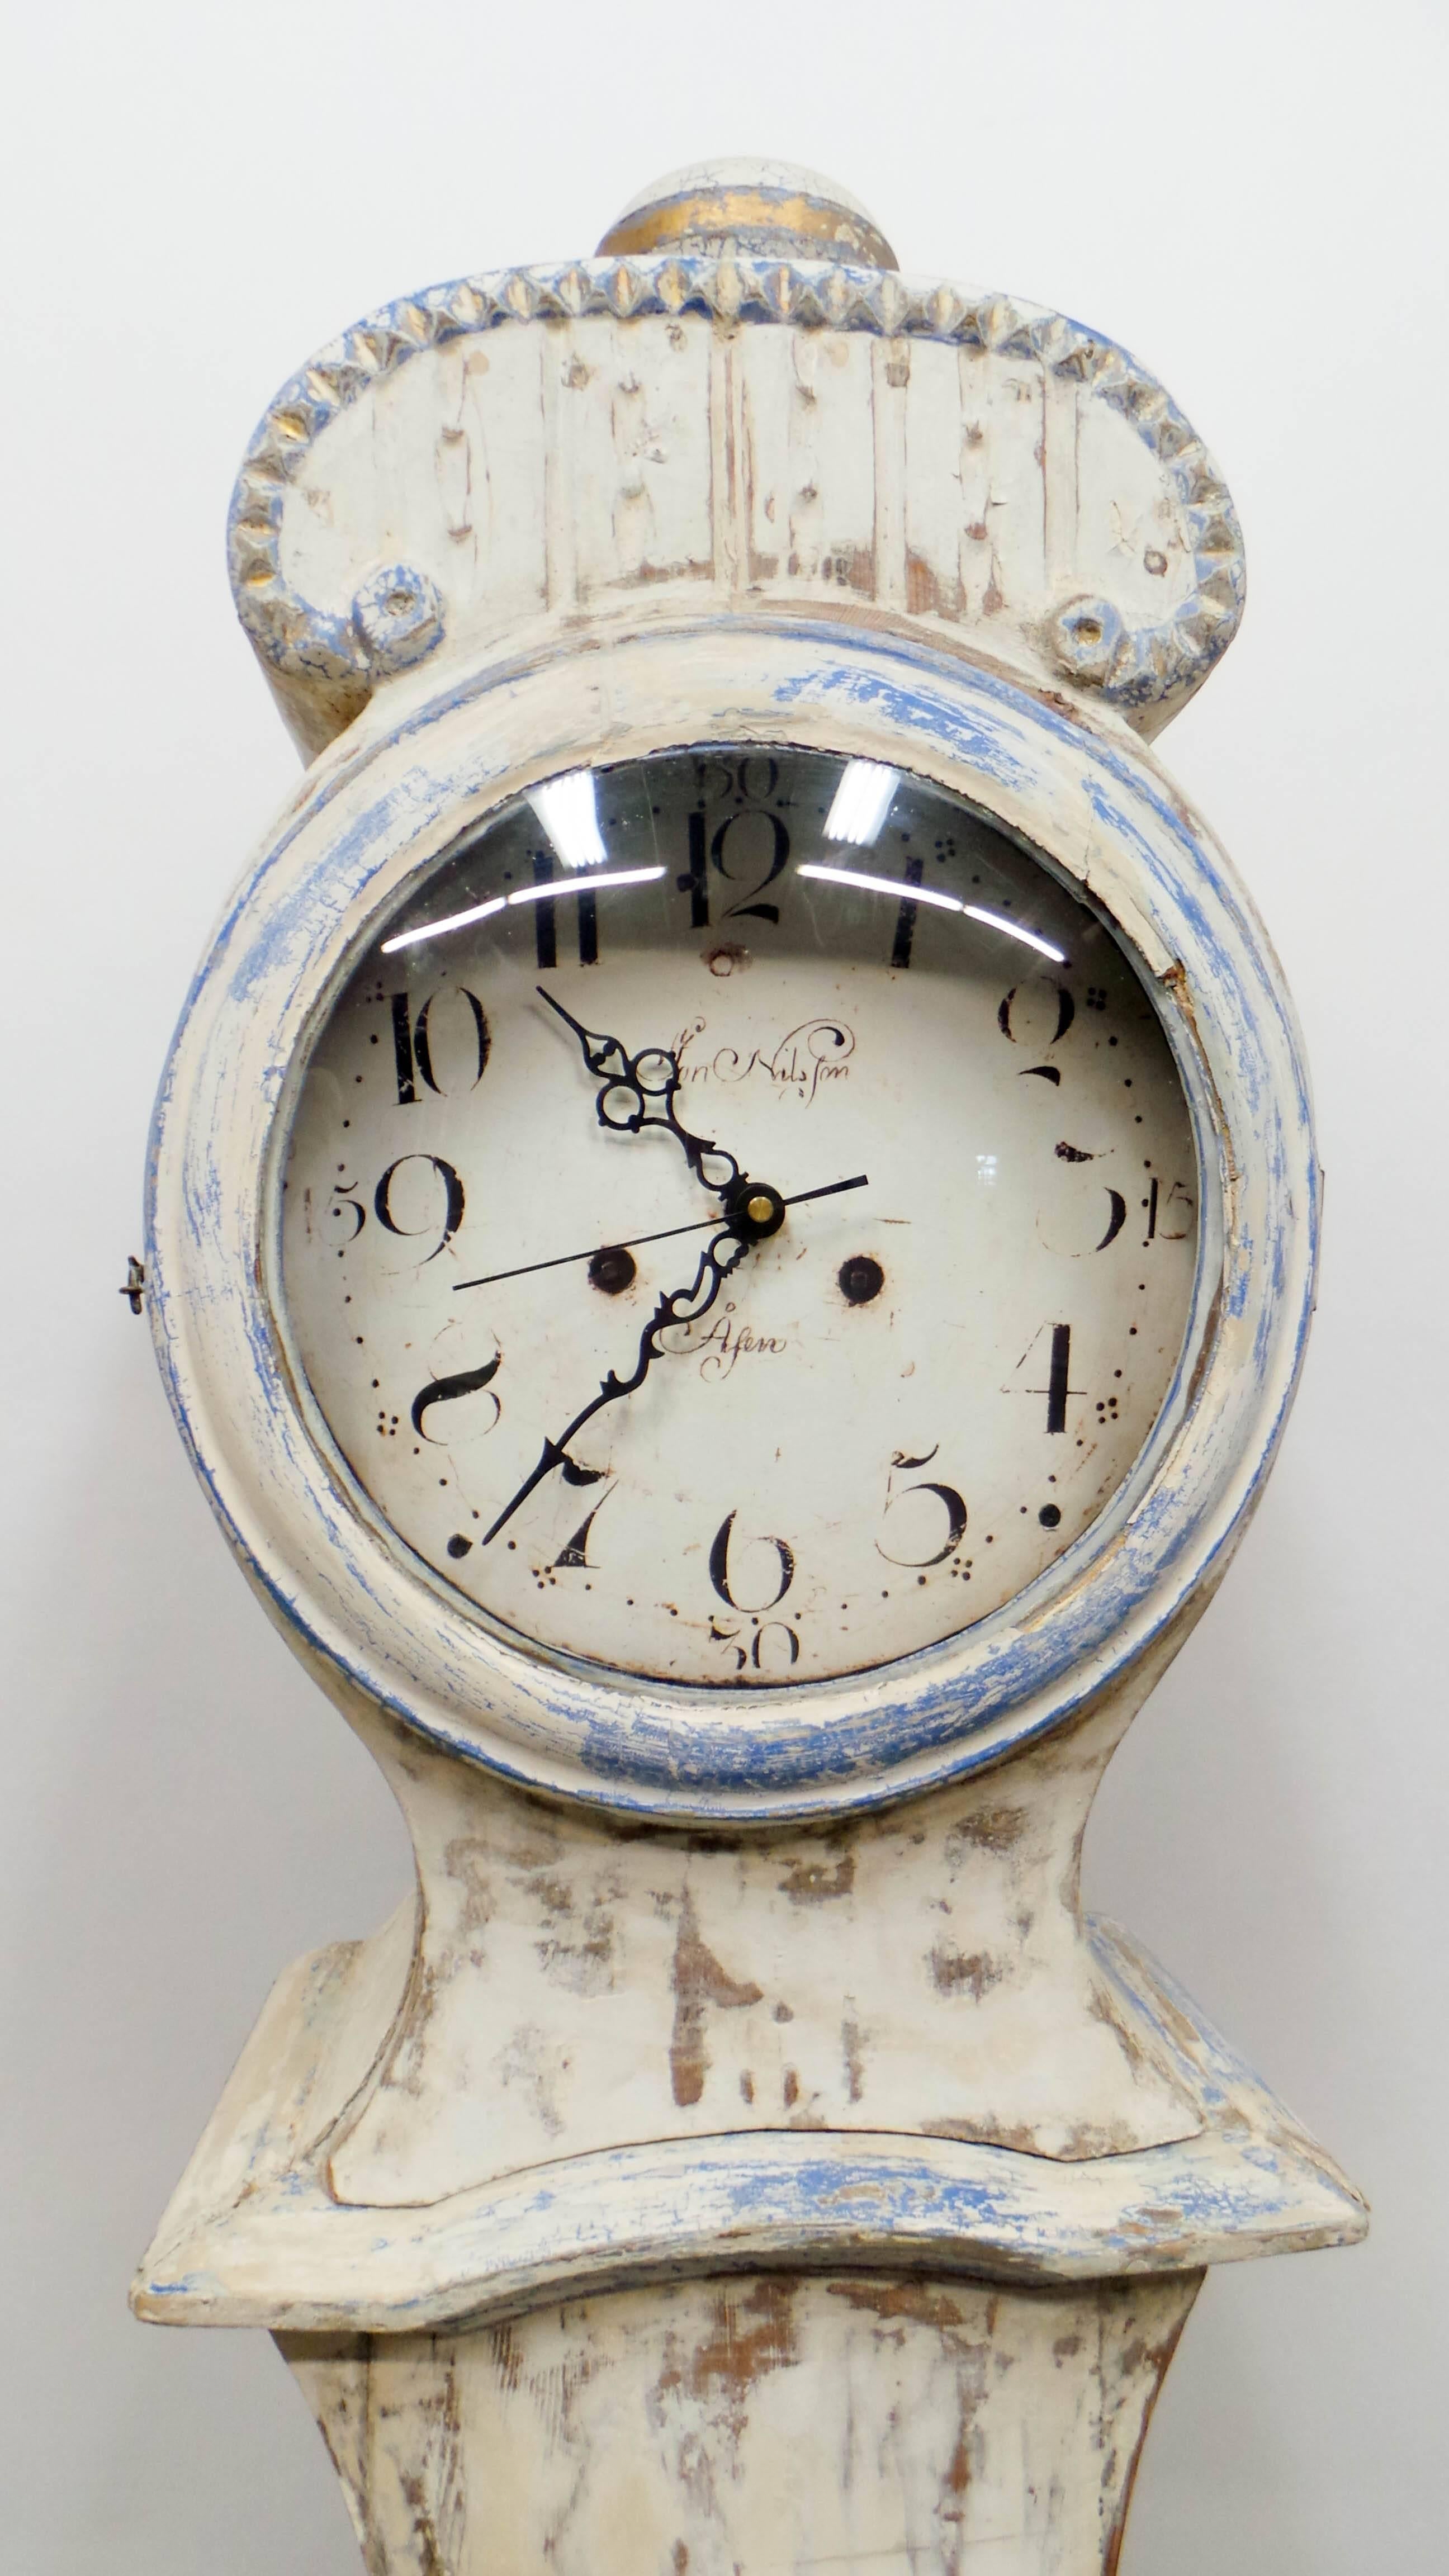 Il s'agit d'une horloge suédoise à long boîtier peinte 100% originale, le modèle est appelé 